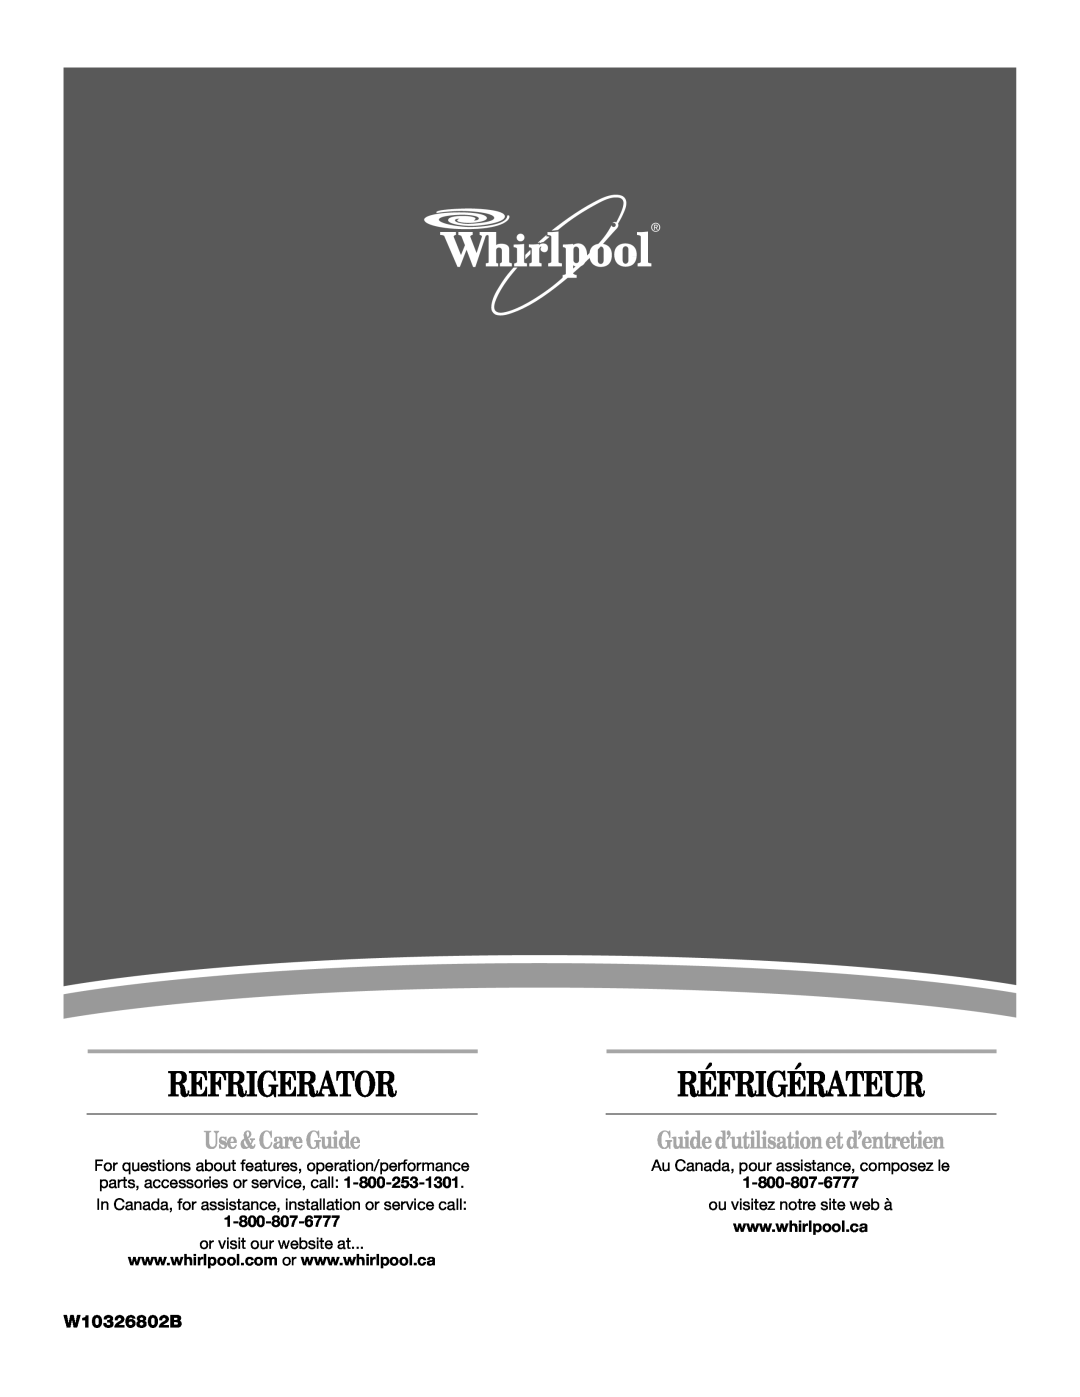 Whirlpool W10326802B manual Use &Care Guide, Refrigerator, Réfrigérateur, Guide d’utilisation et d’entretien 